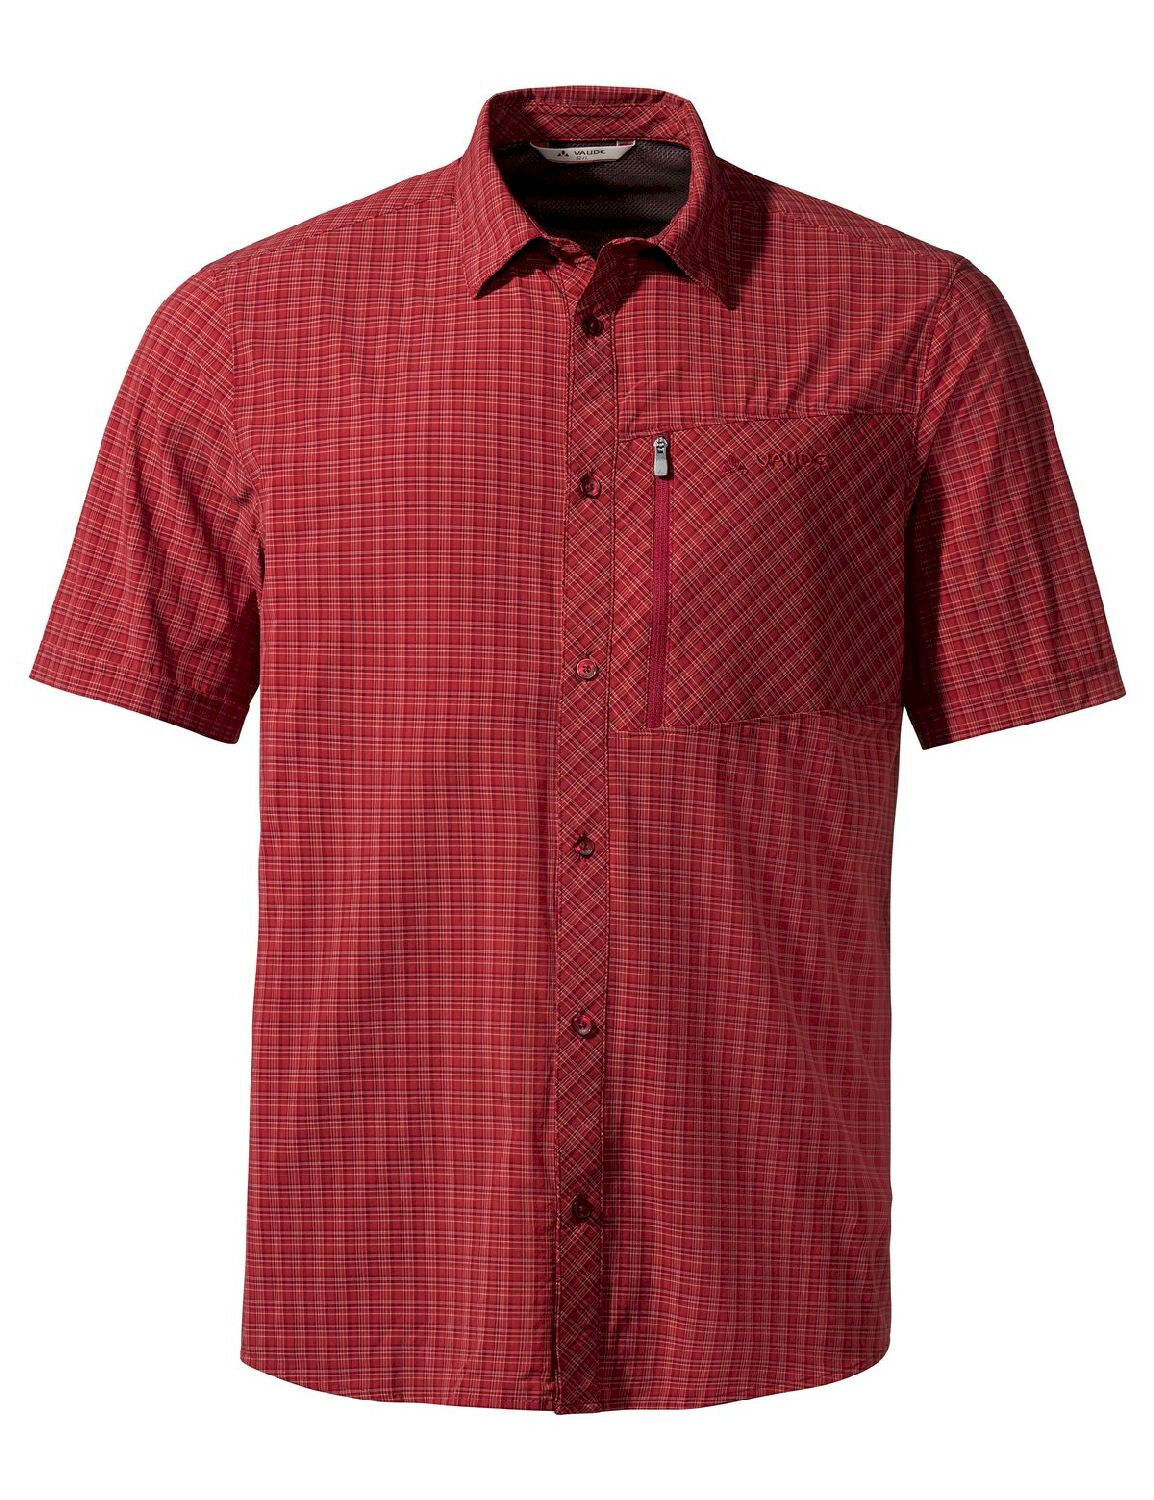 Vaude Seiland Shirt III - Shirt - Men's